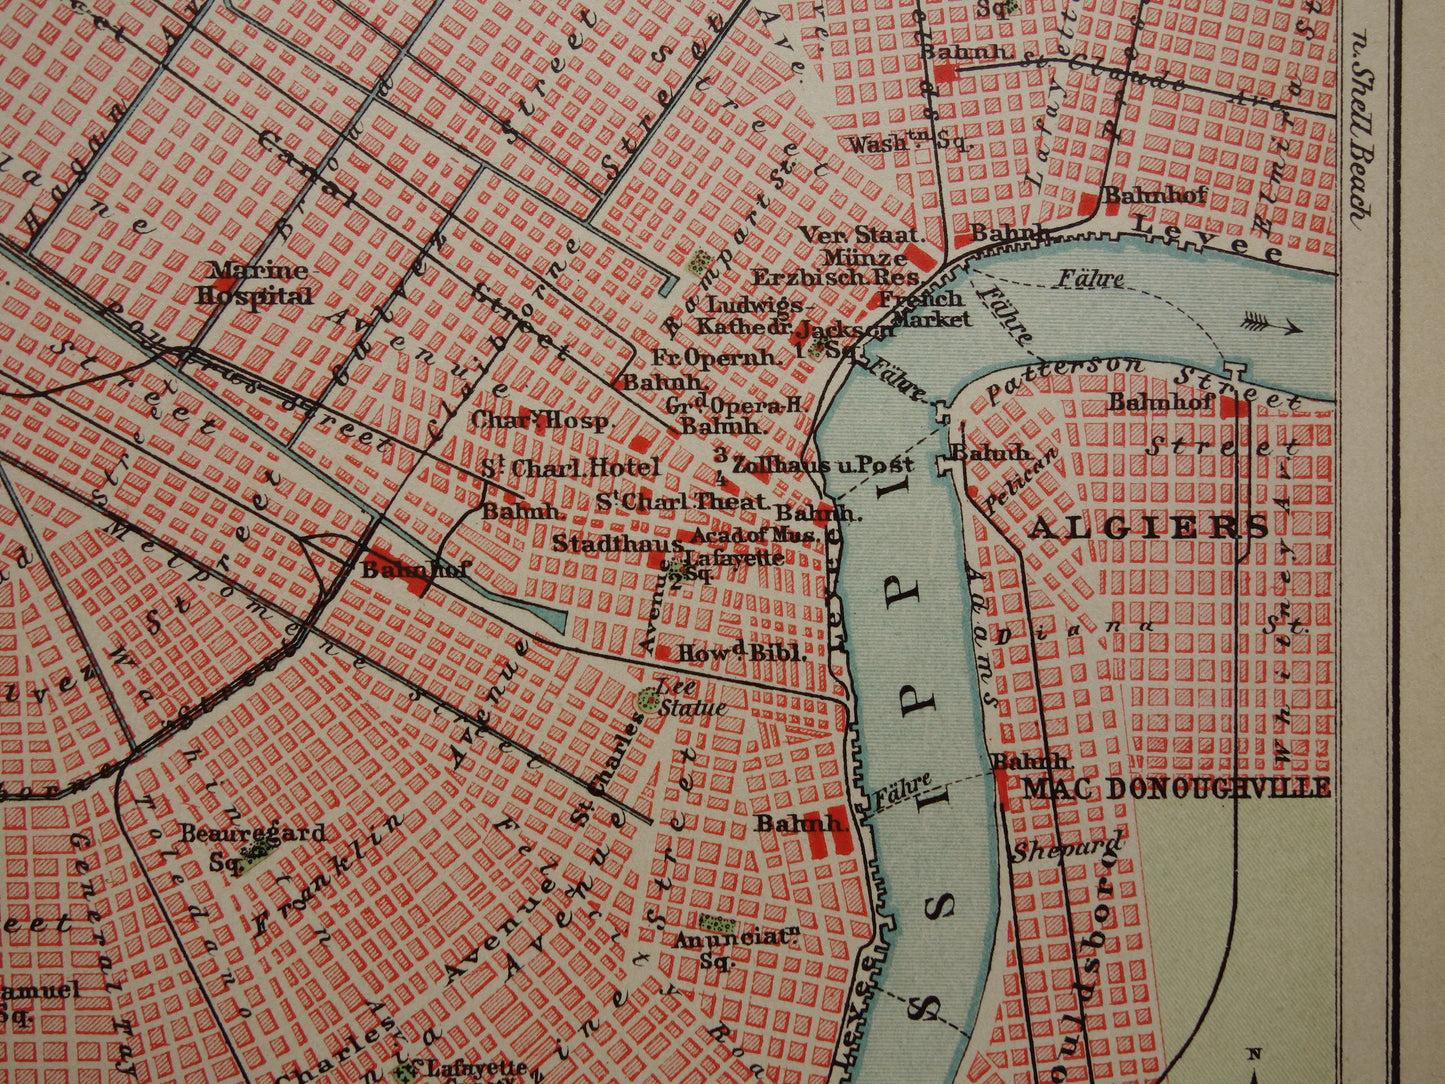 New Orleans oude plattegrond uit 1905 originele antieke Duitse kaart van de New Orleans en Mississippi delta met jaartal